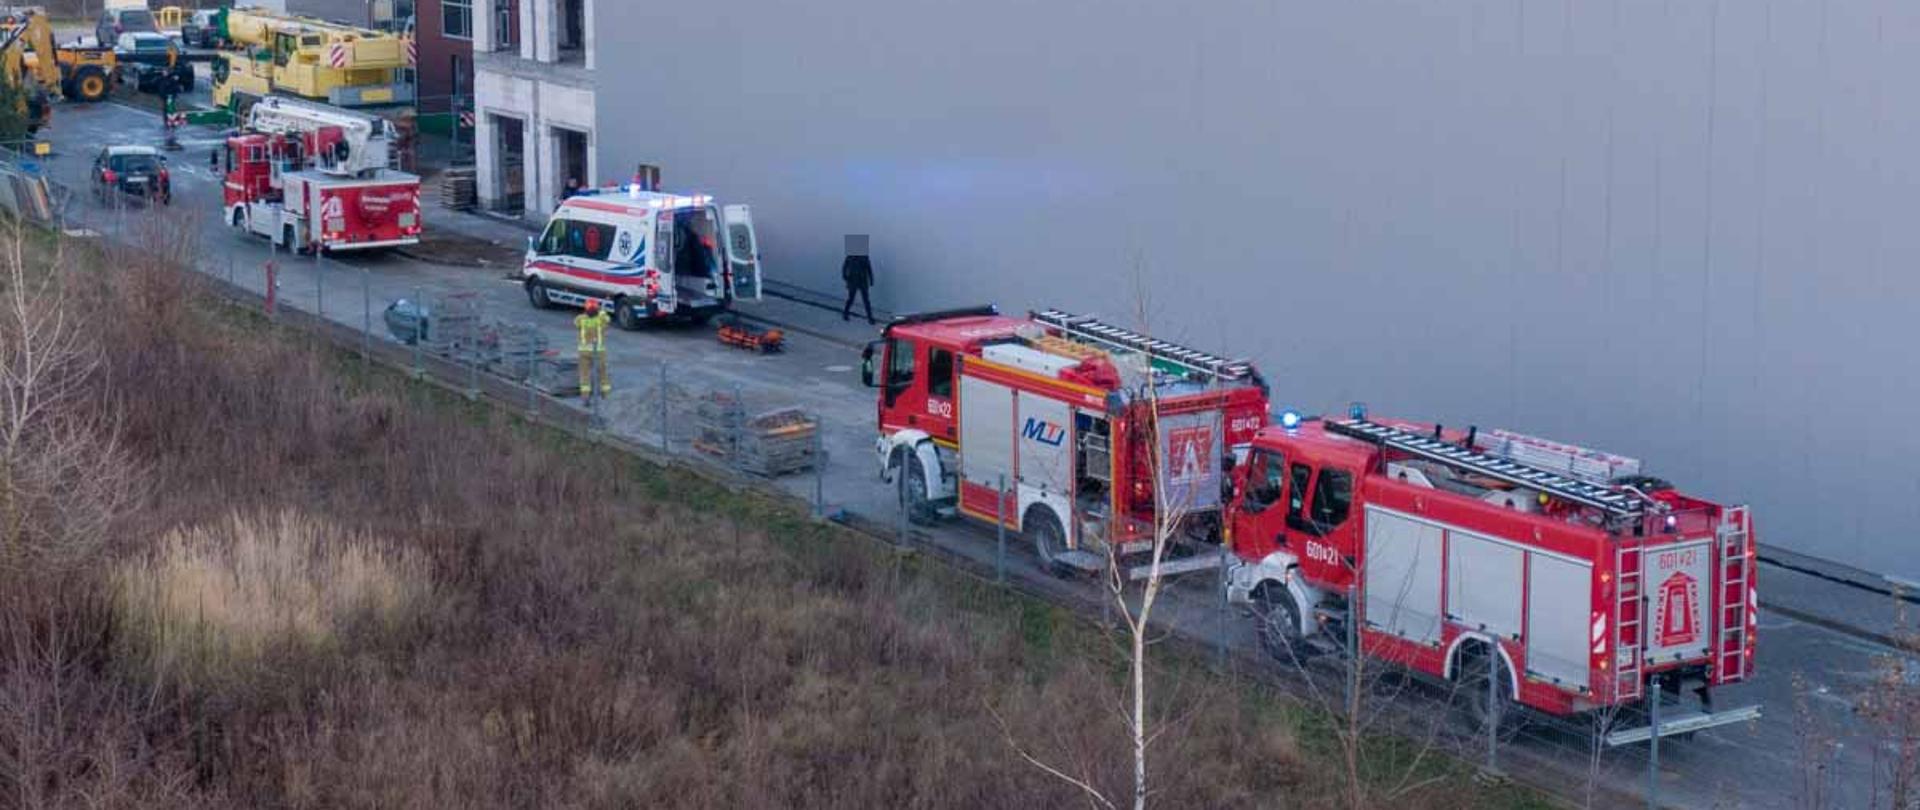 Na zdjęciu 3 pojazdy strażackie w tym podnośnik na niebieskich sygnałach świetlnych, karetka z otwartymi drzwiami stoi przed budynkiem w trakcie budowy